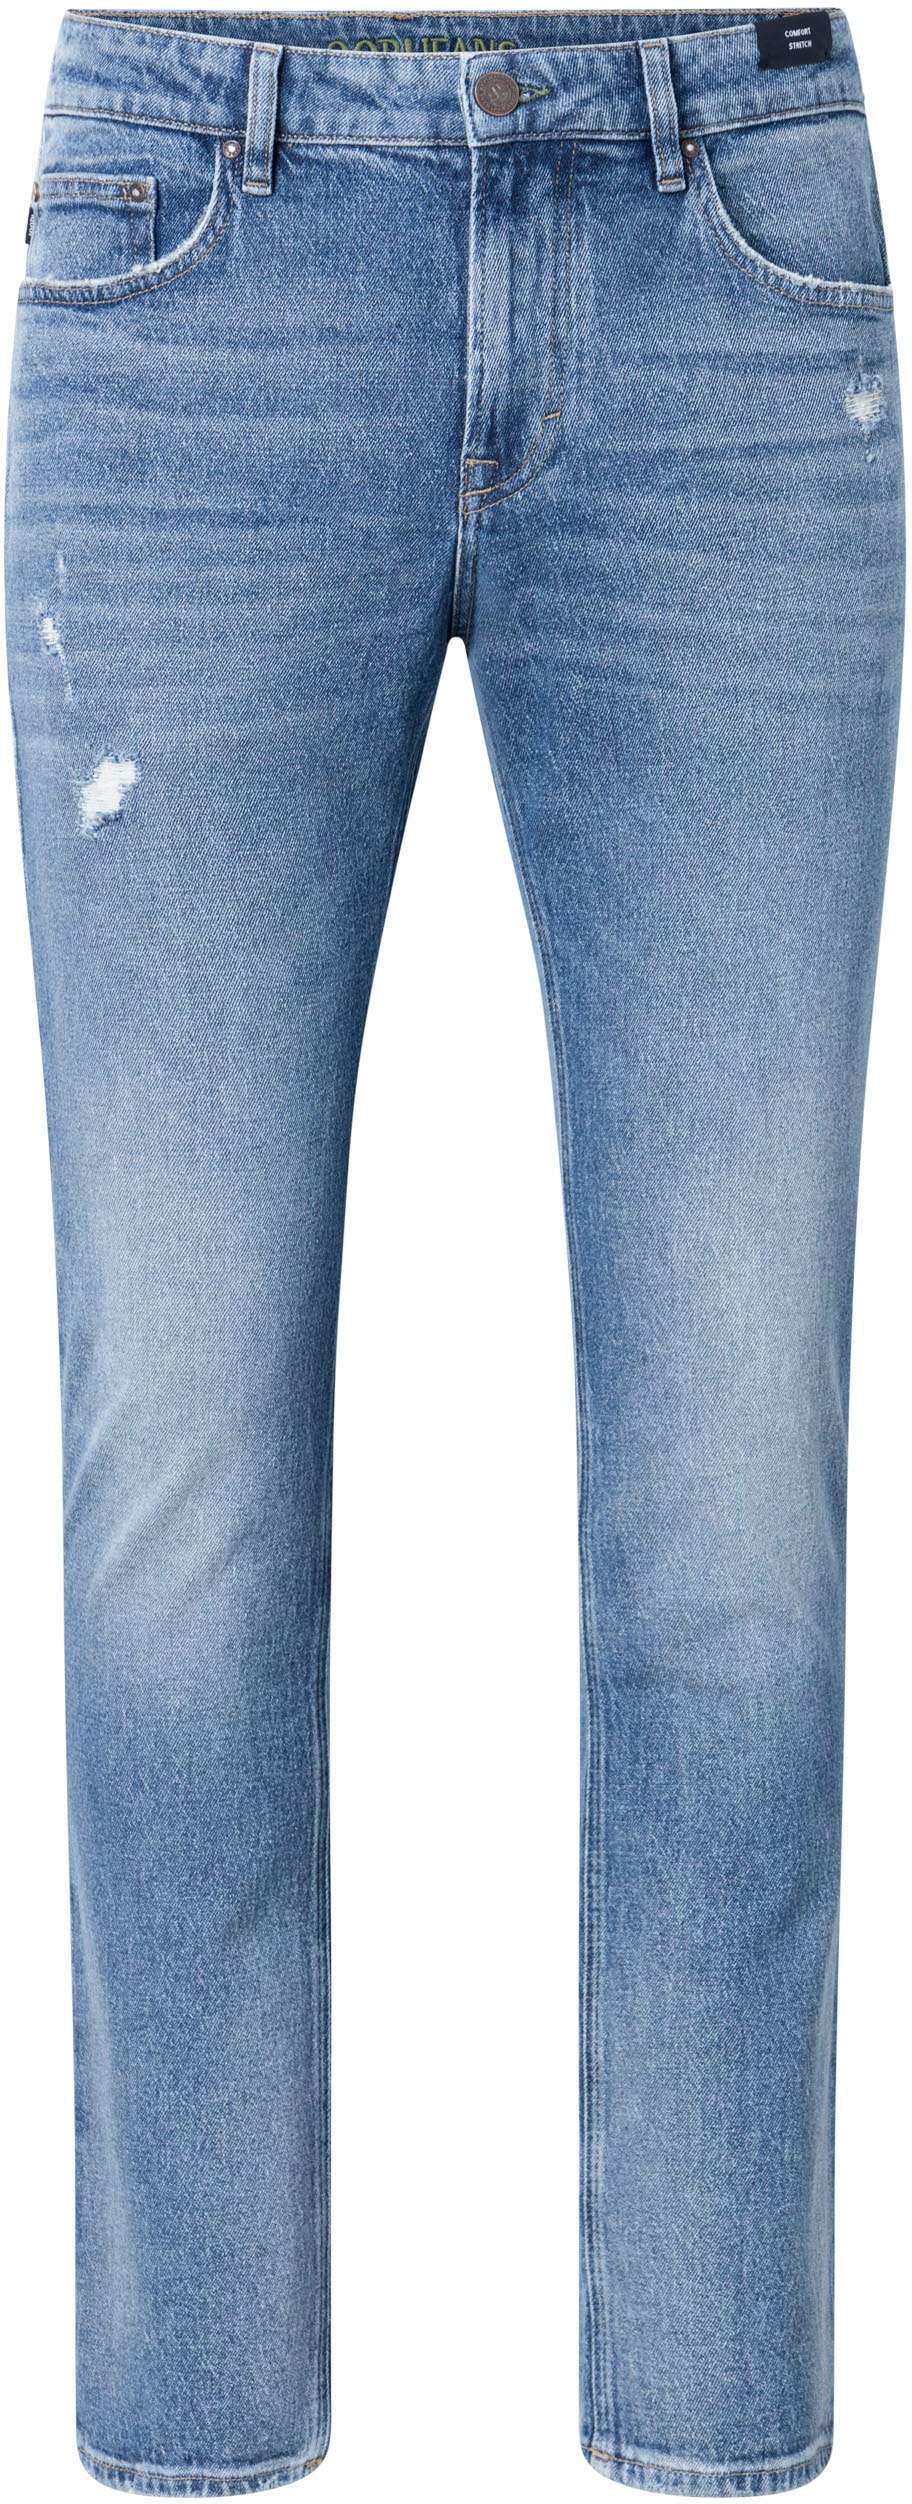 Прямые джинсы с 3D-логотипом на значке.